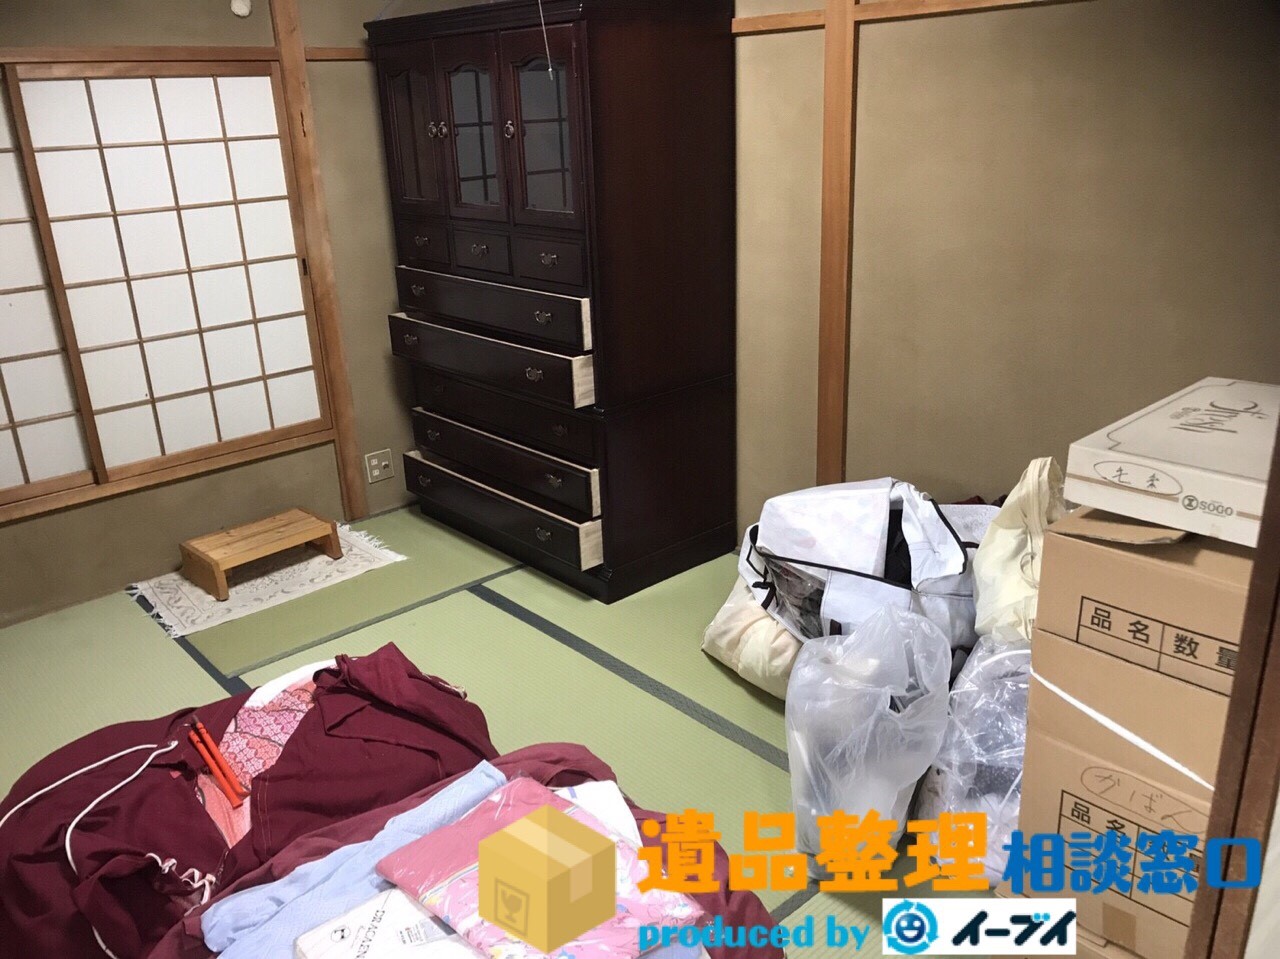 大阪府寝屋川市で遺品整理に伴い家具処分や遺品の処分をしました。のアイキャッチ